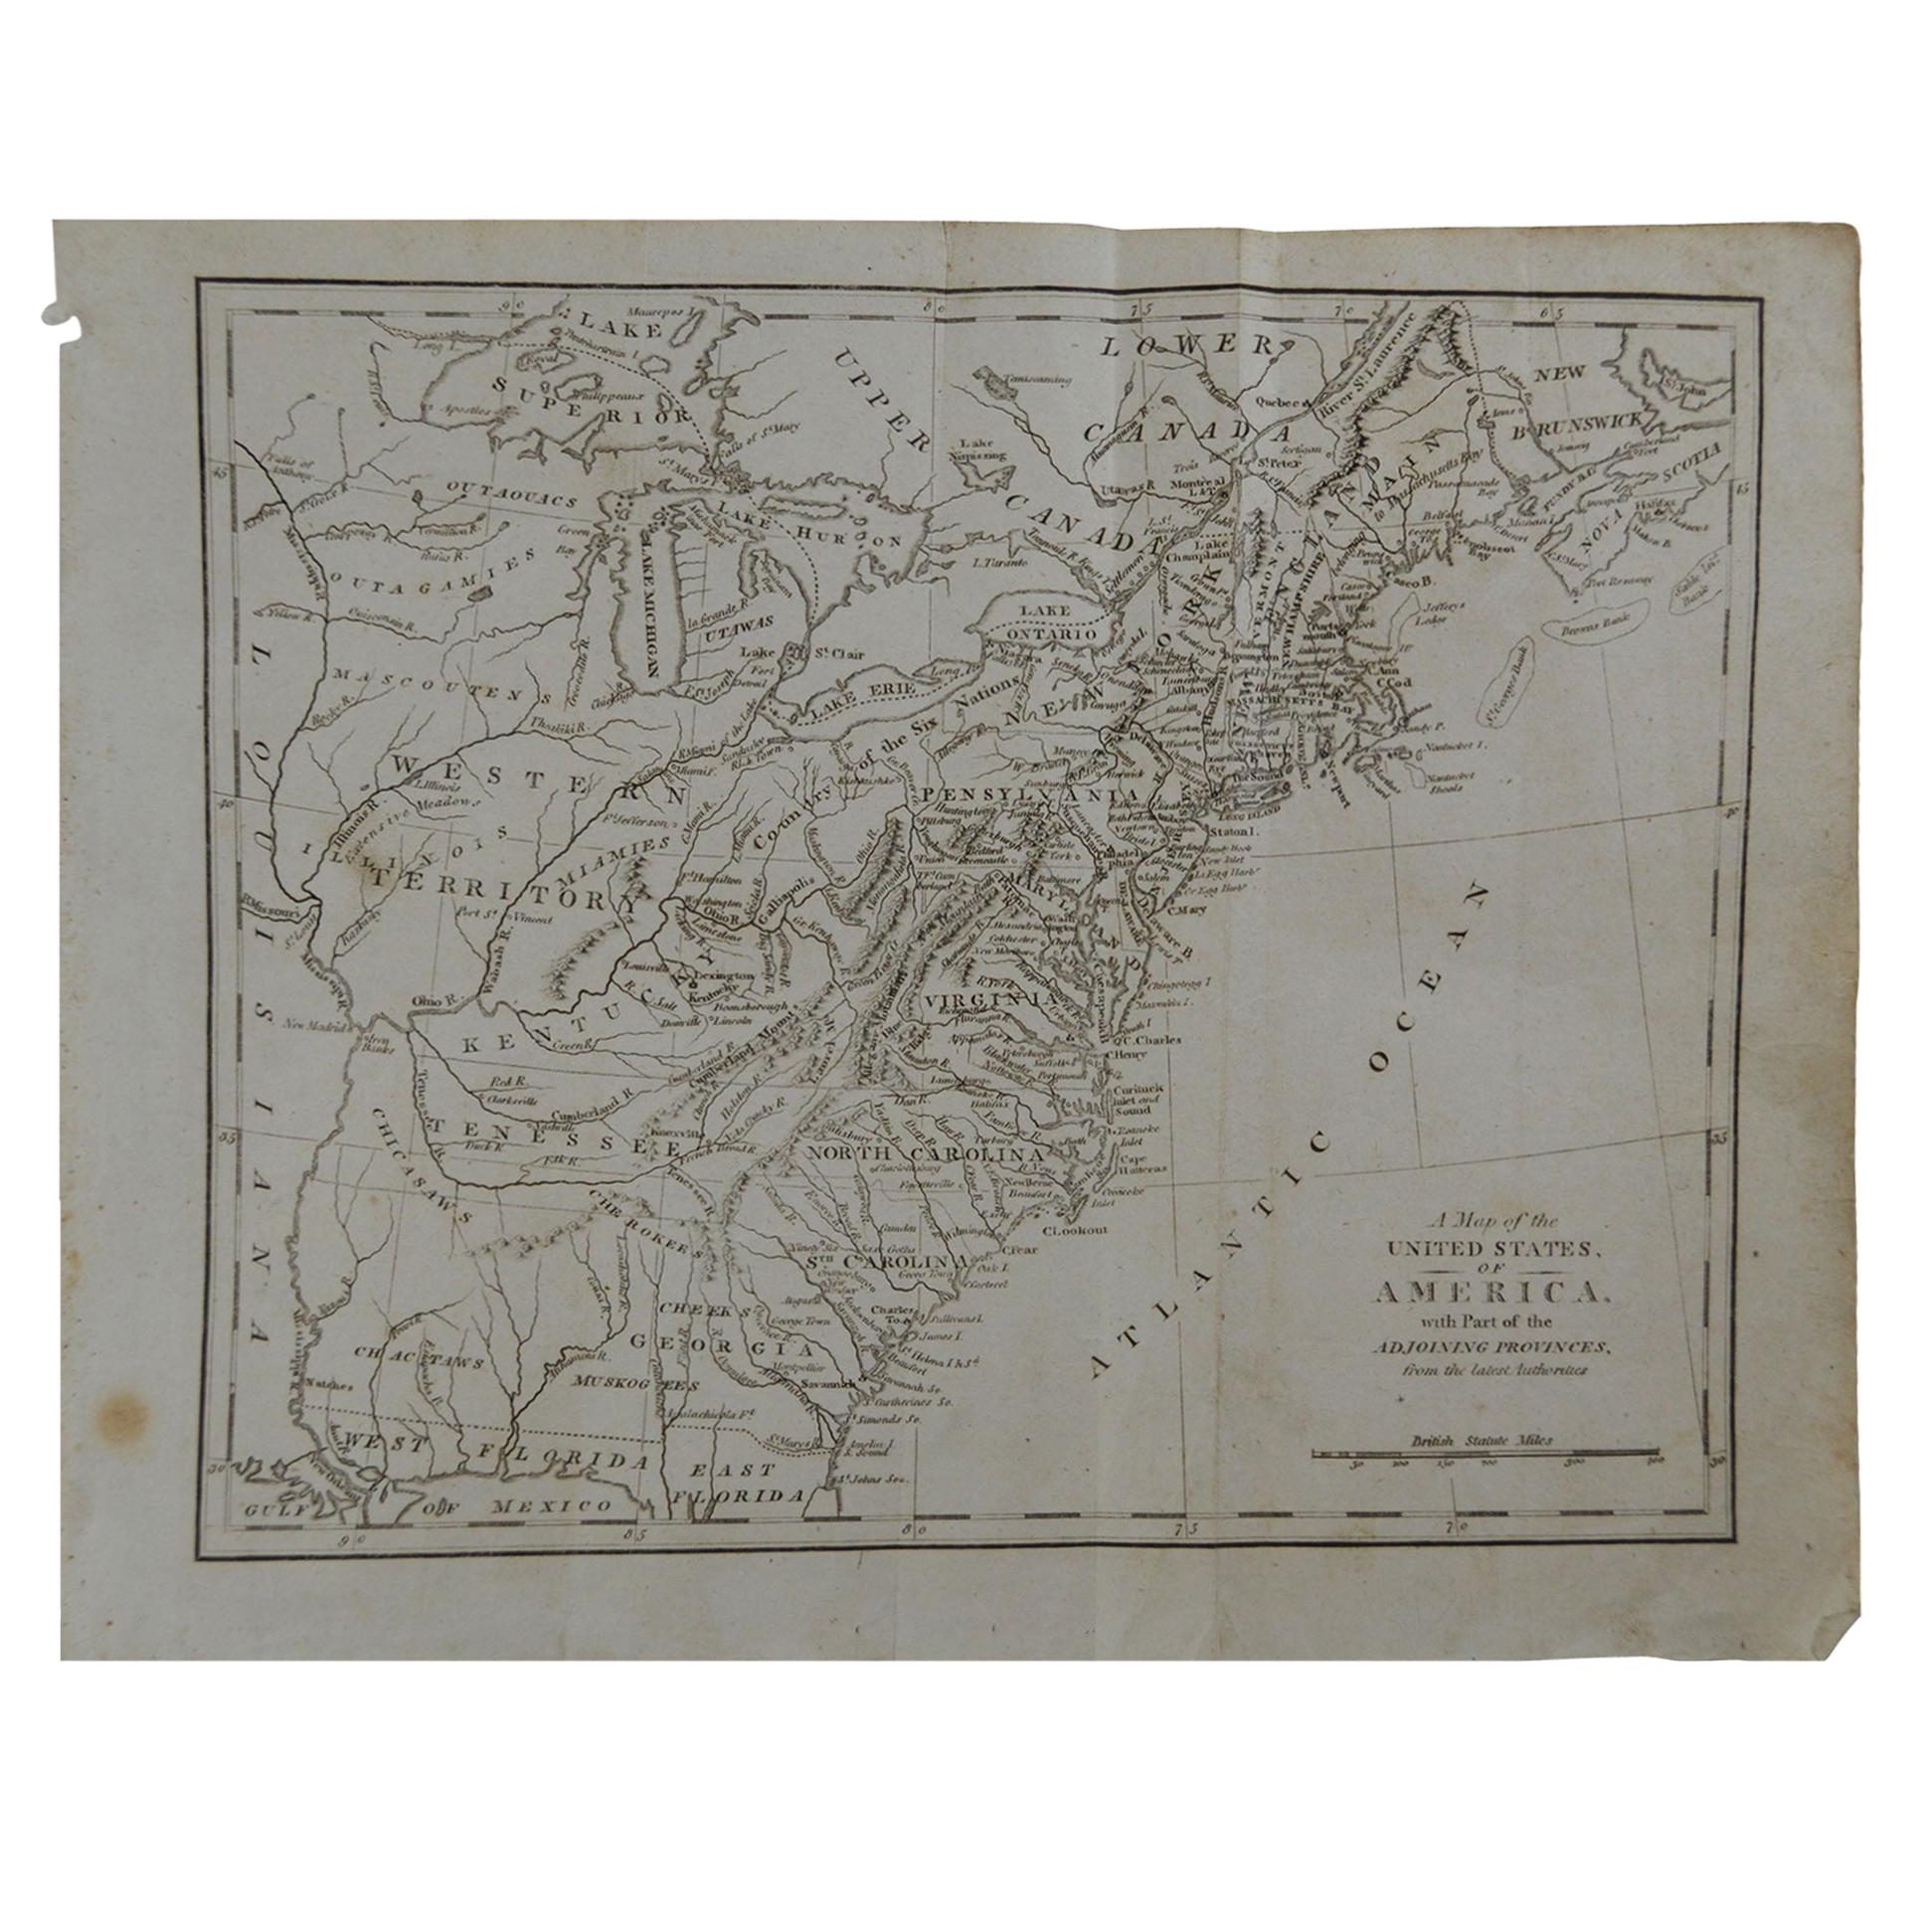 Original Antique Map of The United States, circa 1800